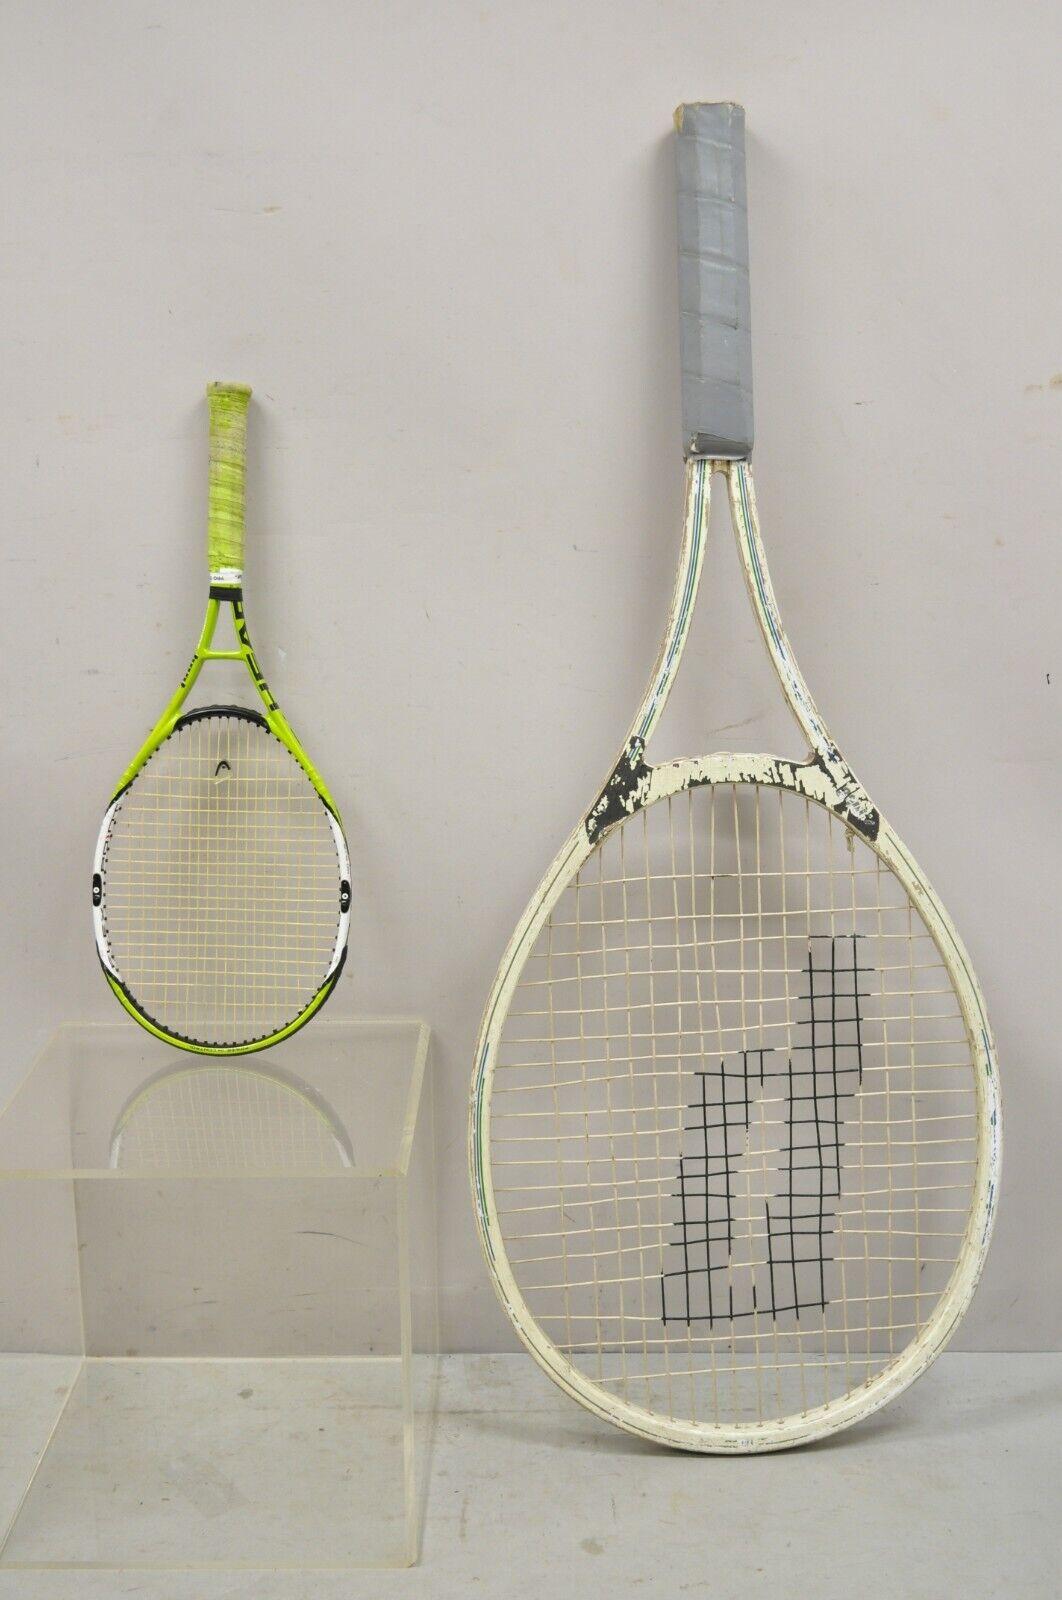 prince tennis racket vintage